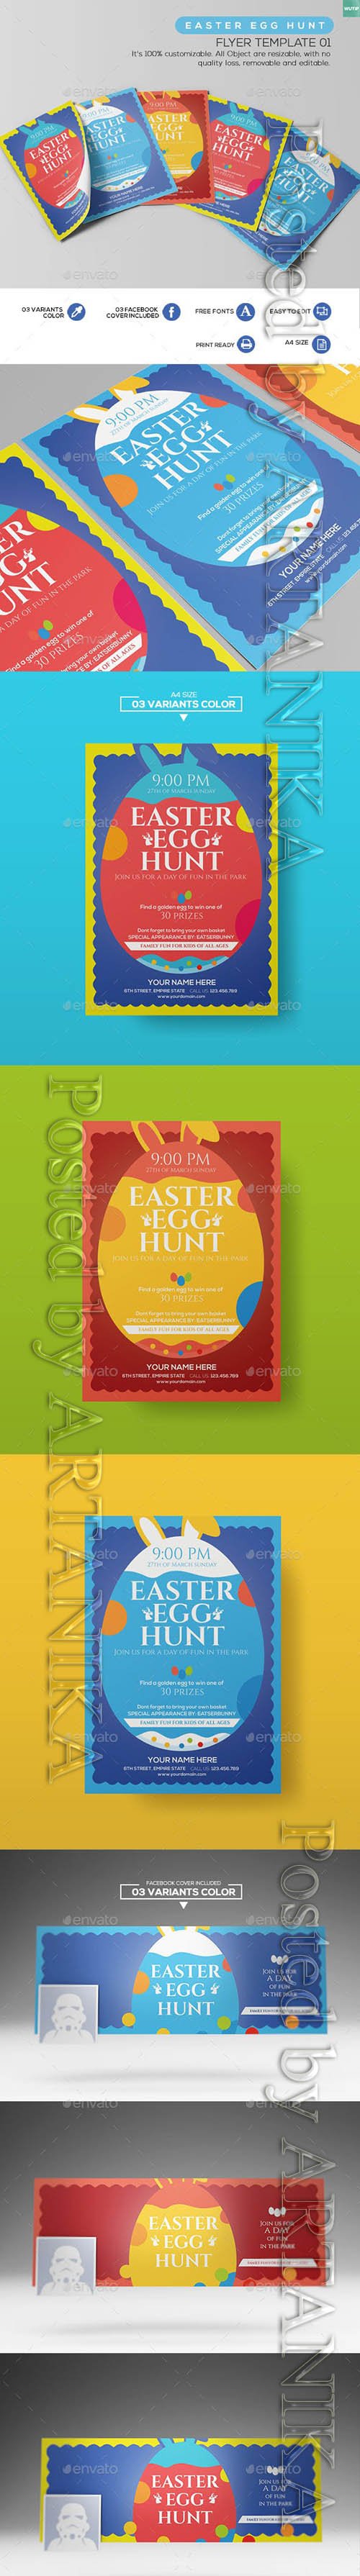 GraphicRiver - Easter Egg Hunt - Flyer Template 01 14019817